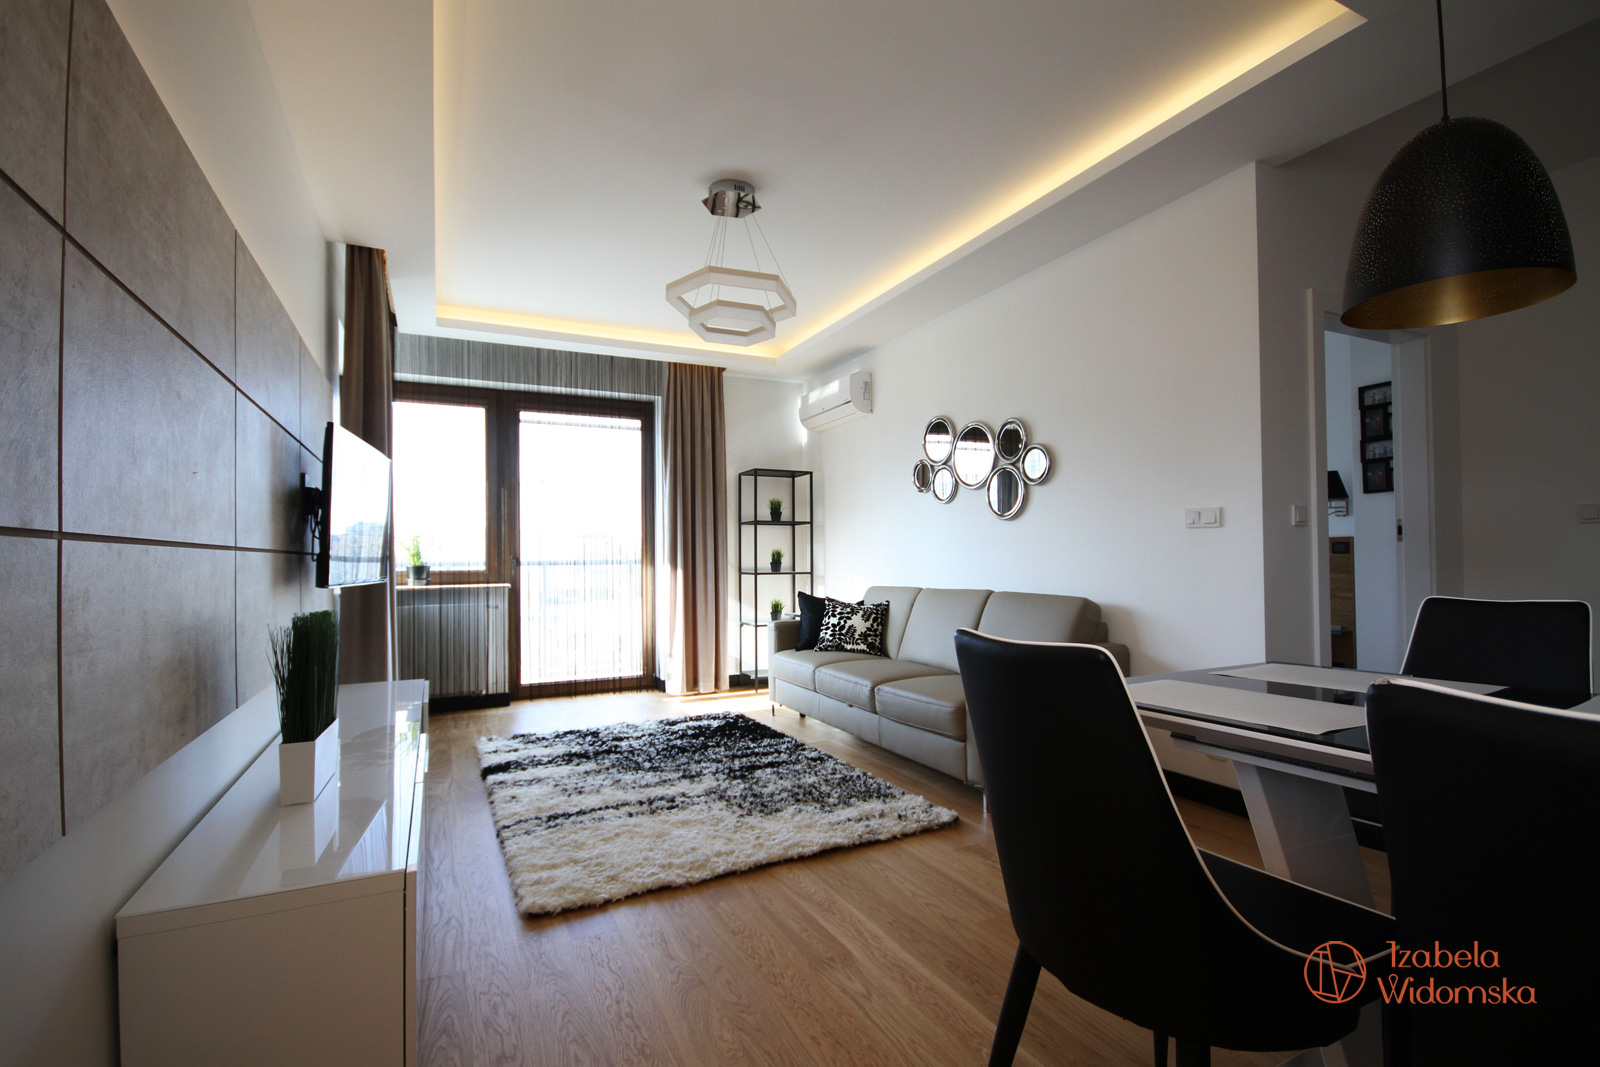 Apartament w kolorze cappucino | Ciepło Komfort Przestrzeń | Projekt wnętrza architekt Izabela Widomska